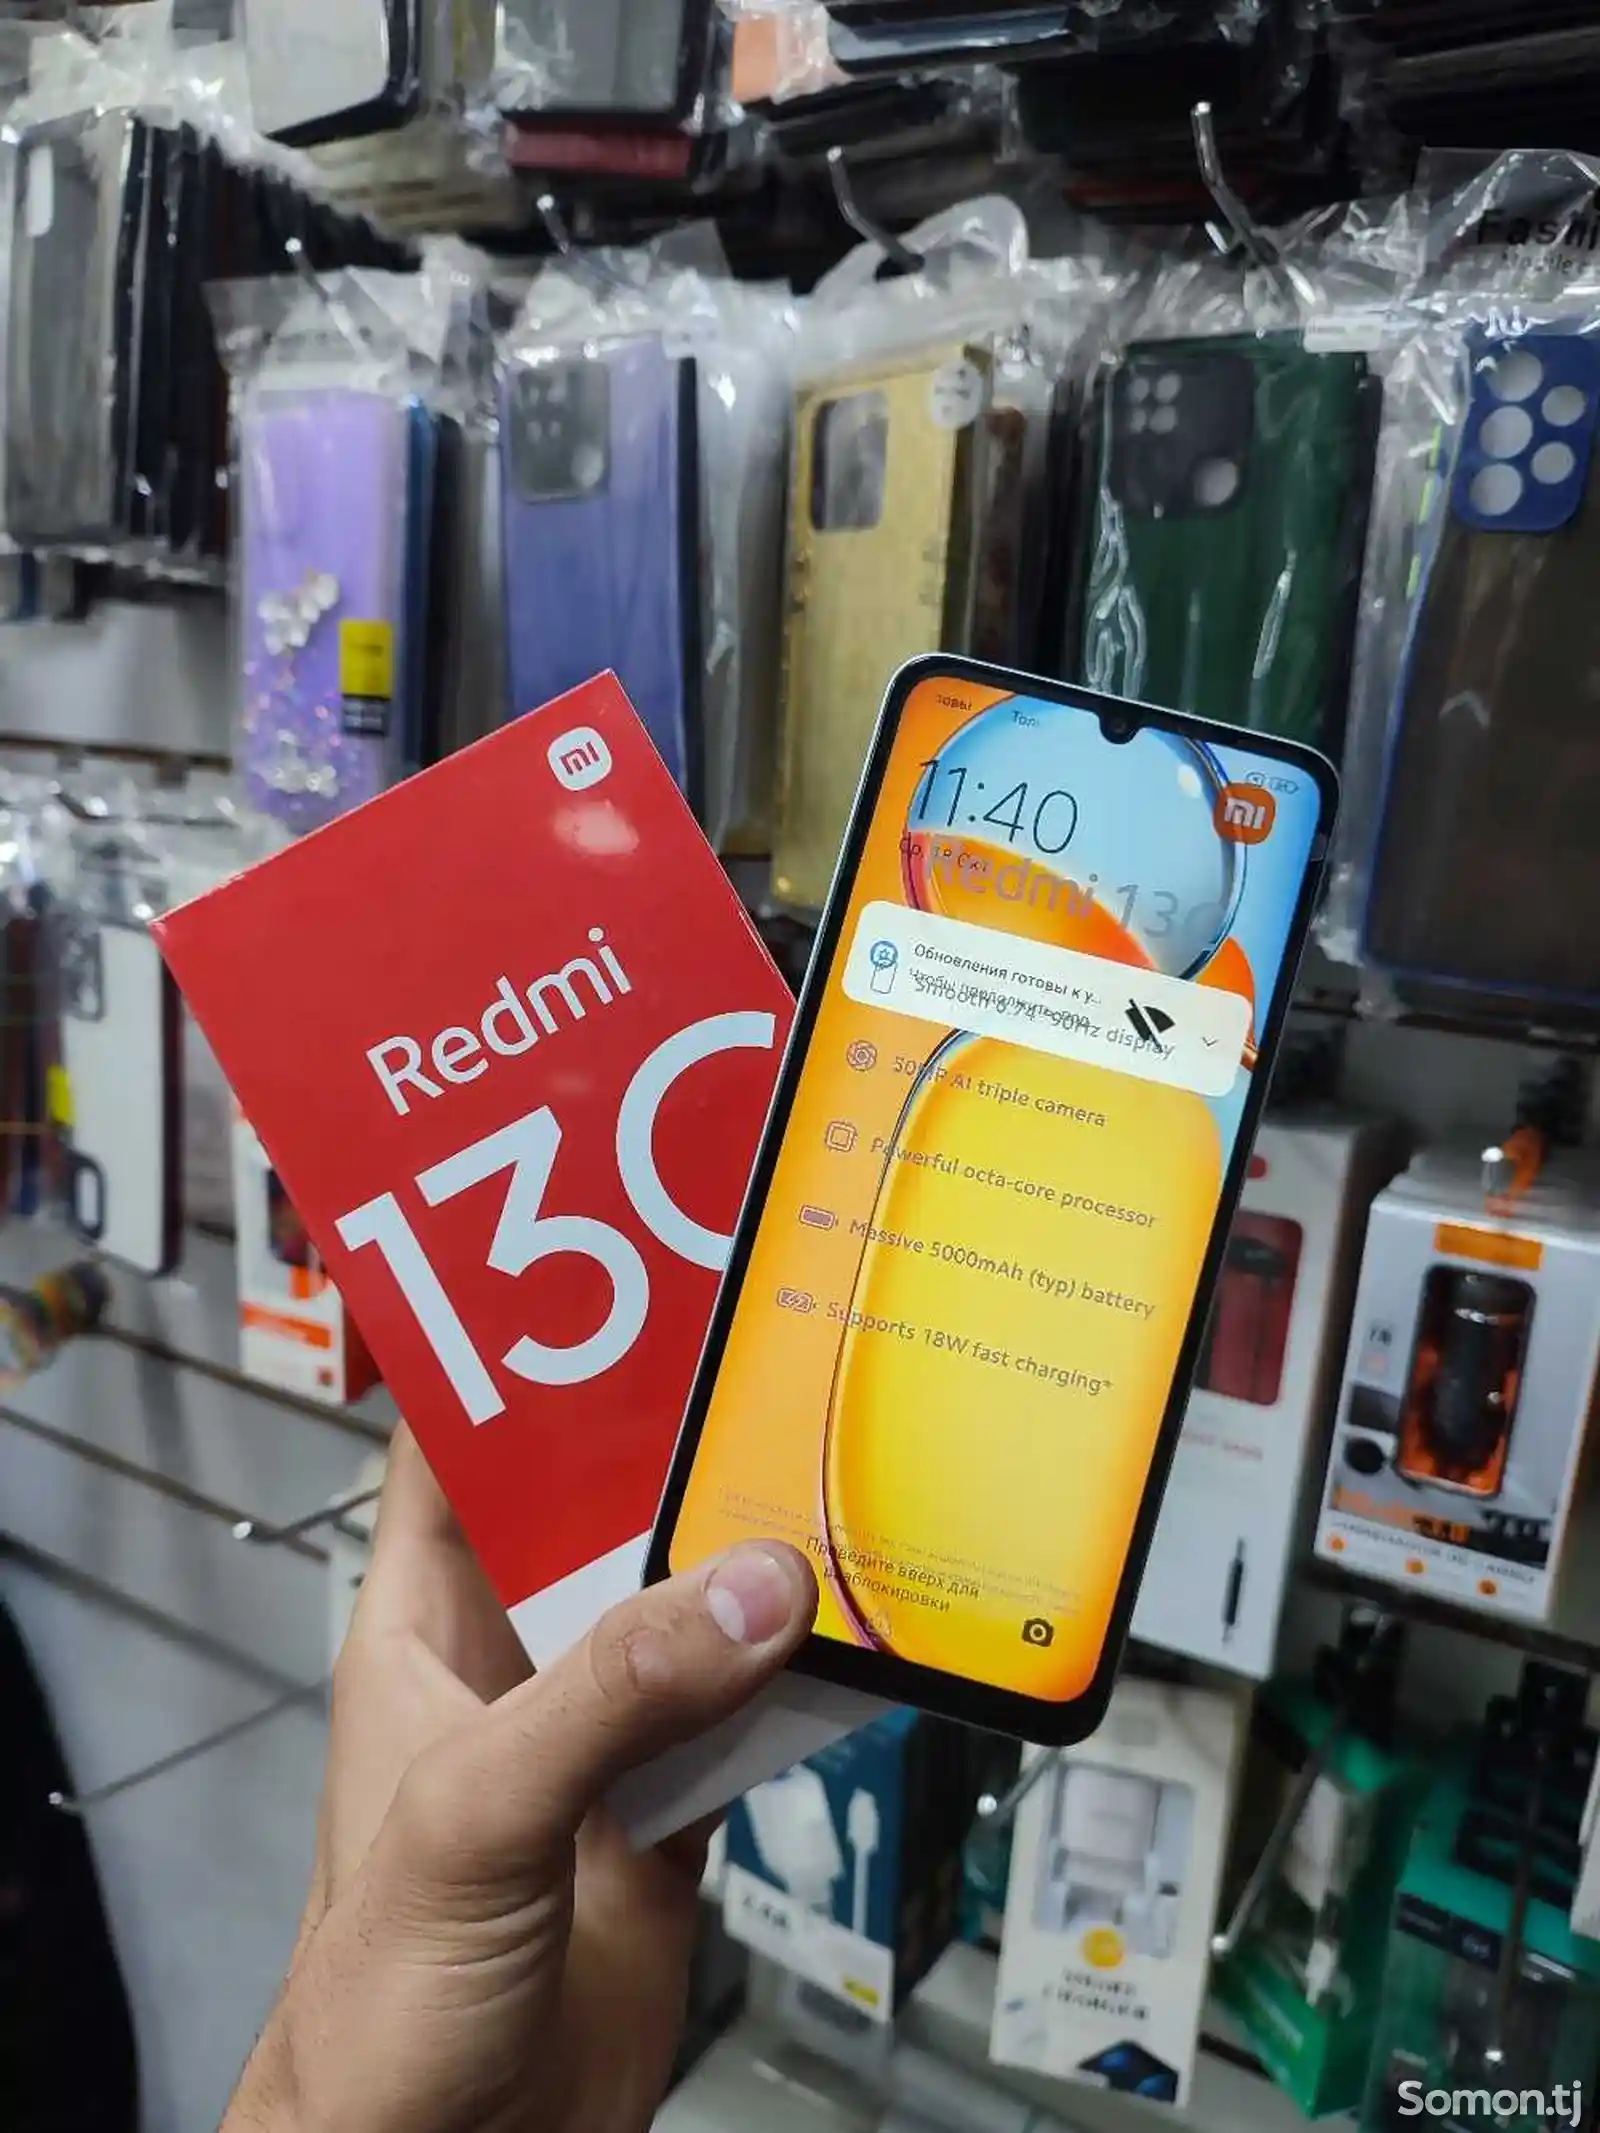 Xiaomi Redmi 13C 8+3/256Gb-8